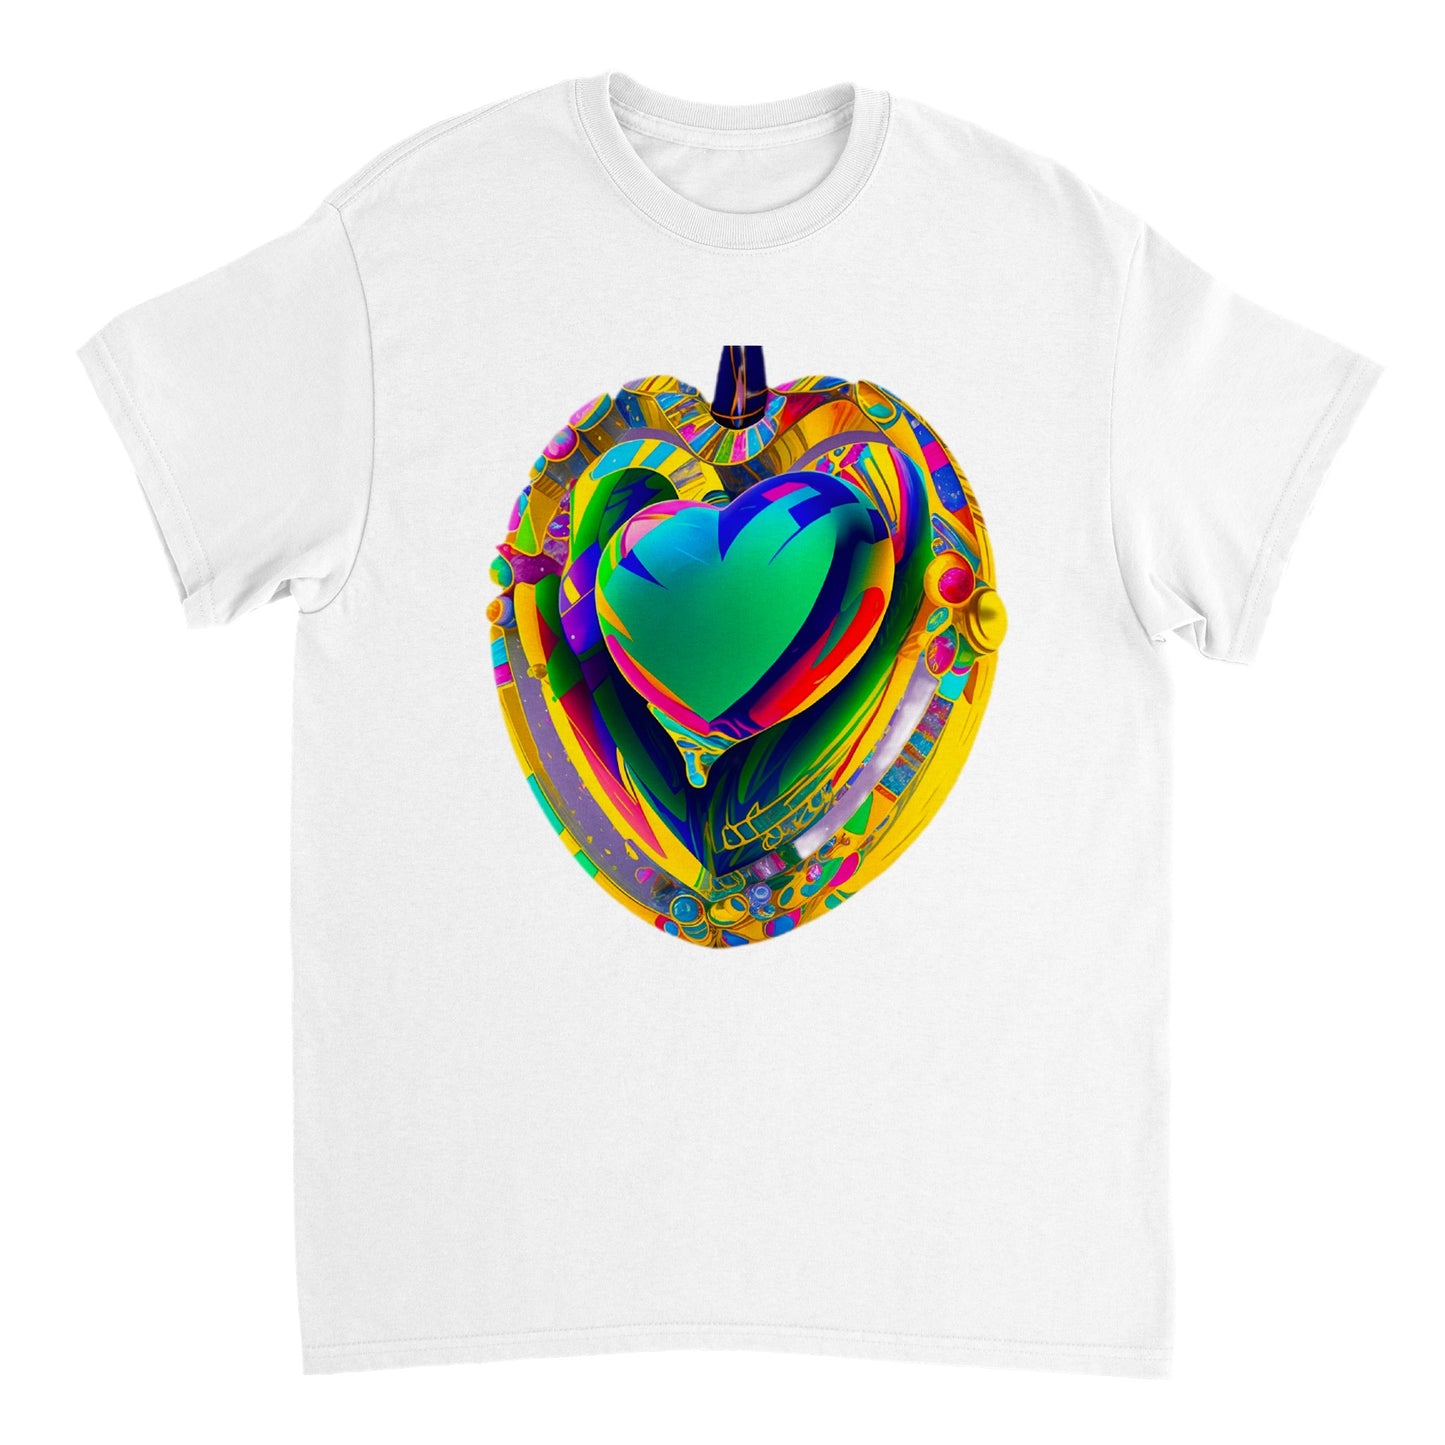 Love Heart - Heavyweight Unisex Crewneck T-shirt 77